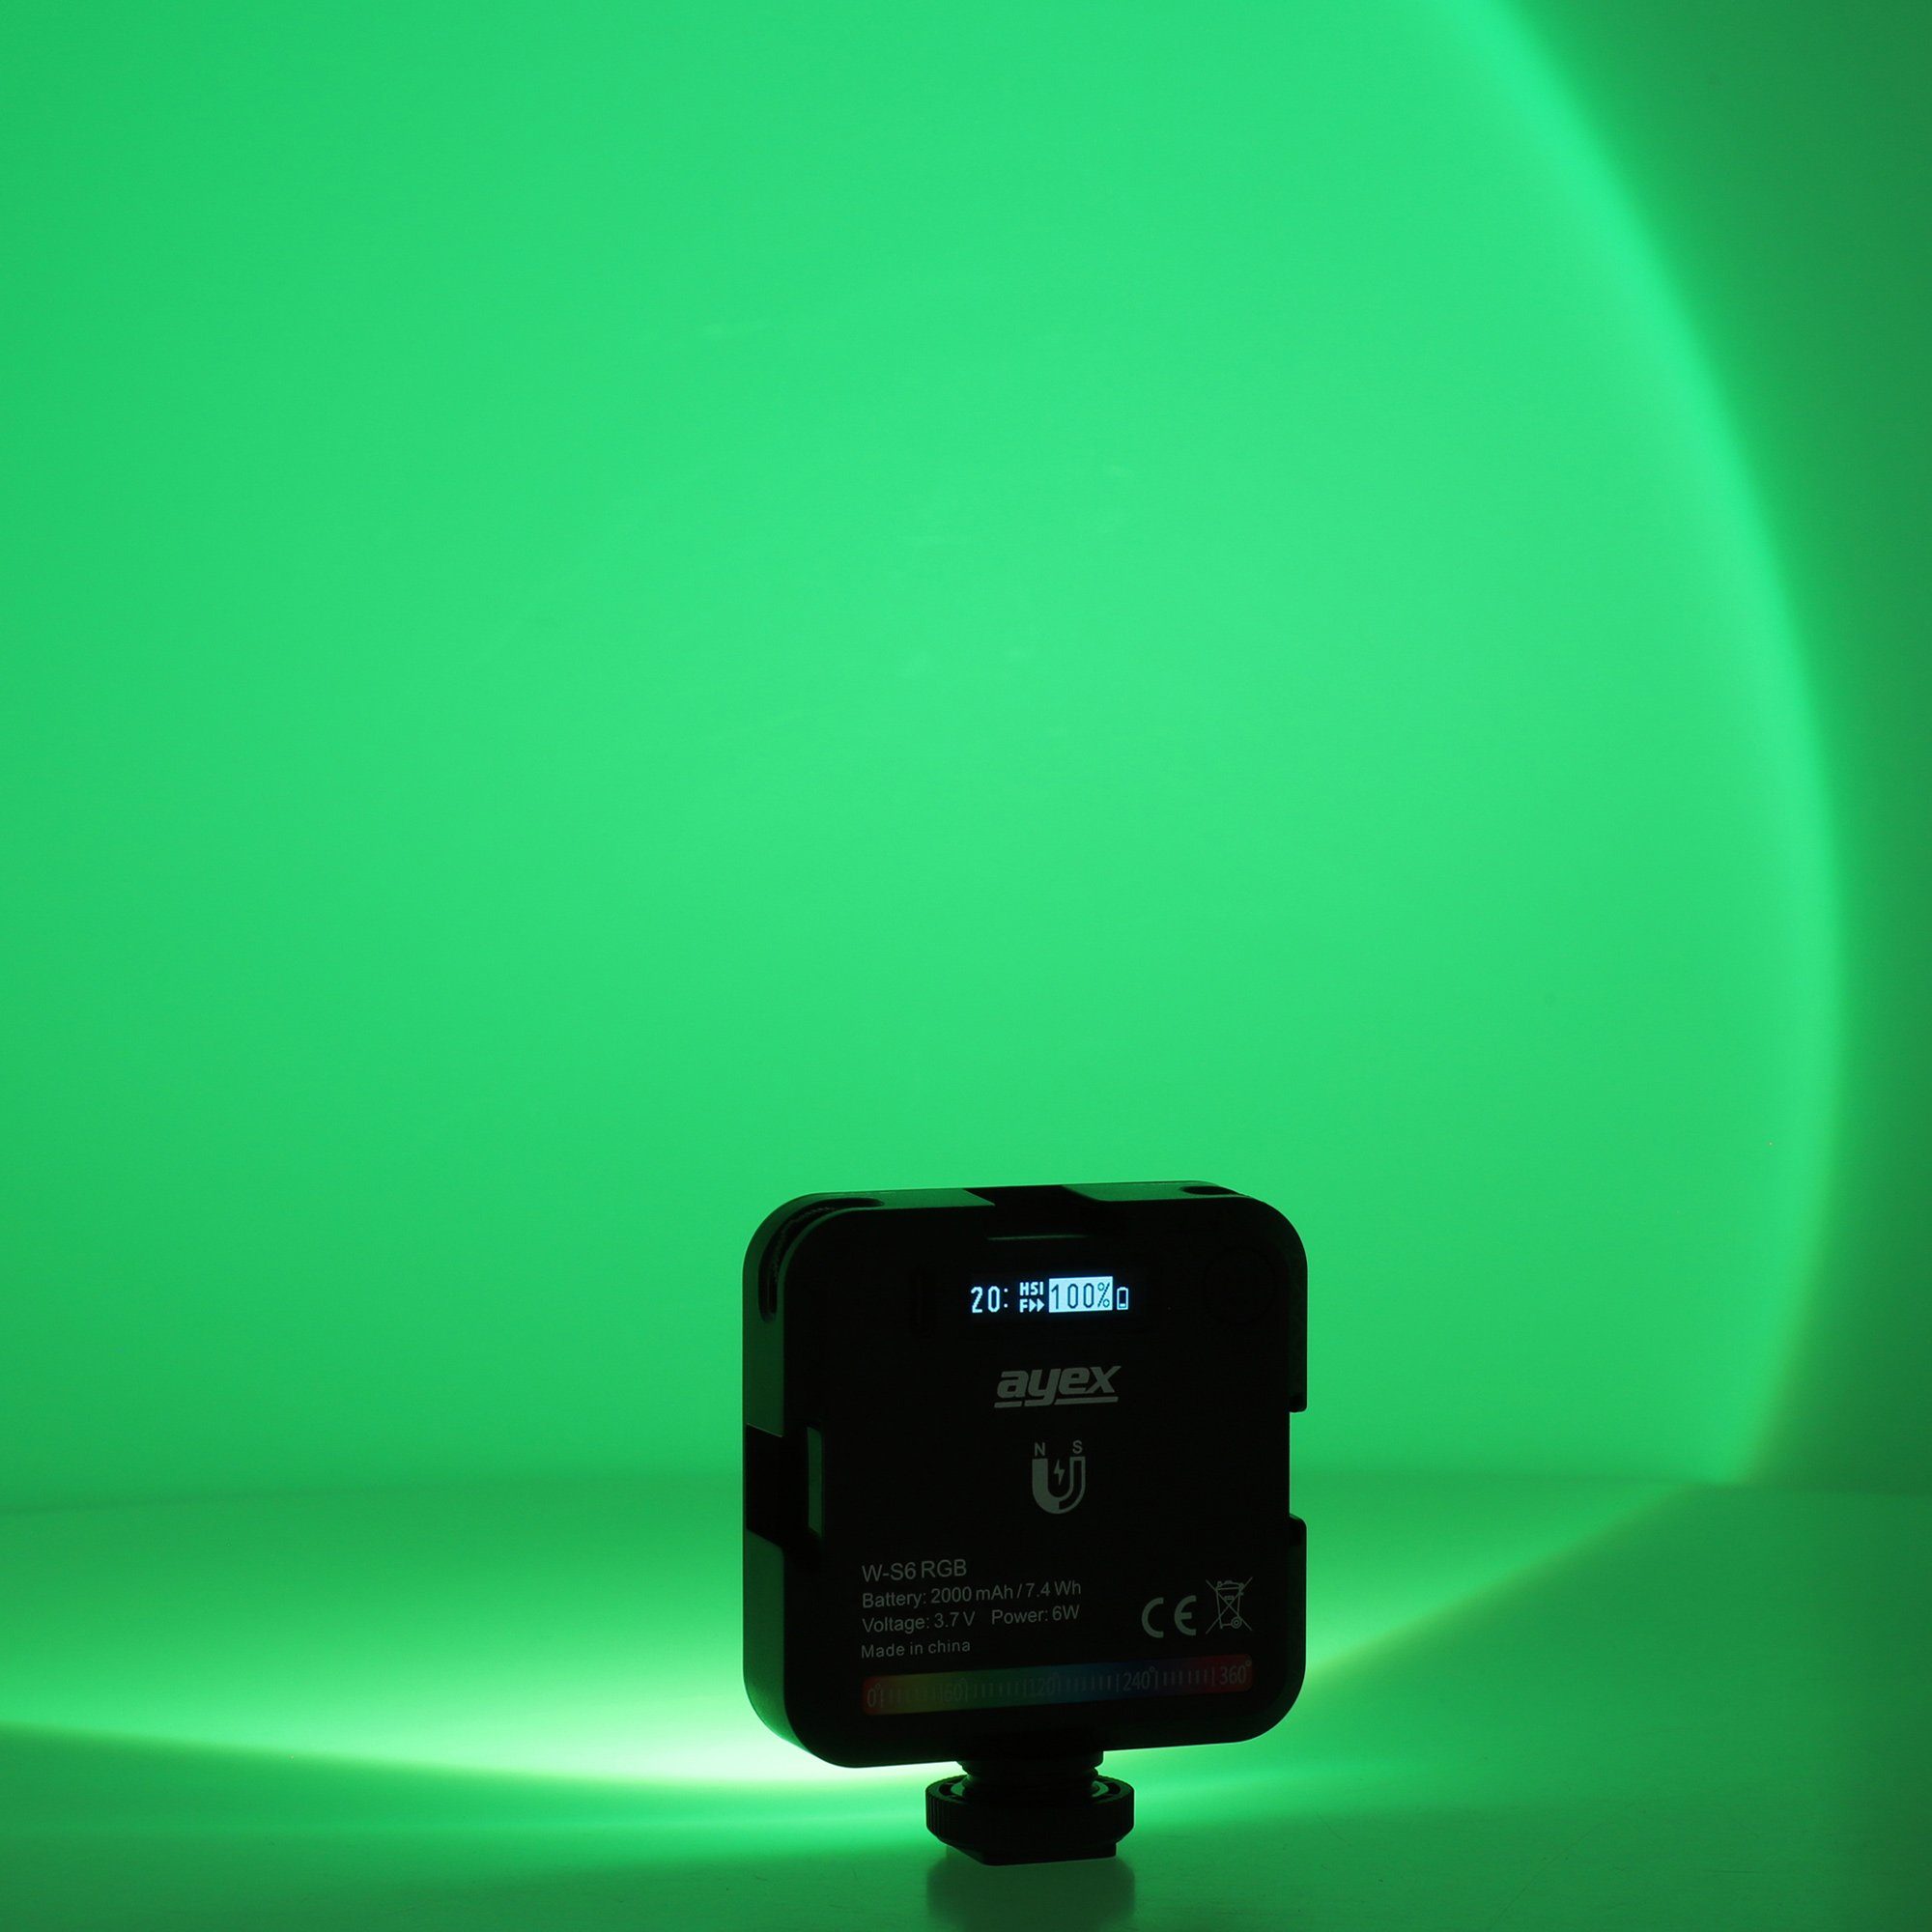 RGB LED Ambiente ayex Lichtperlen Tischleuchte hocheffektive LED Licht Akku 2000mAh 45